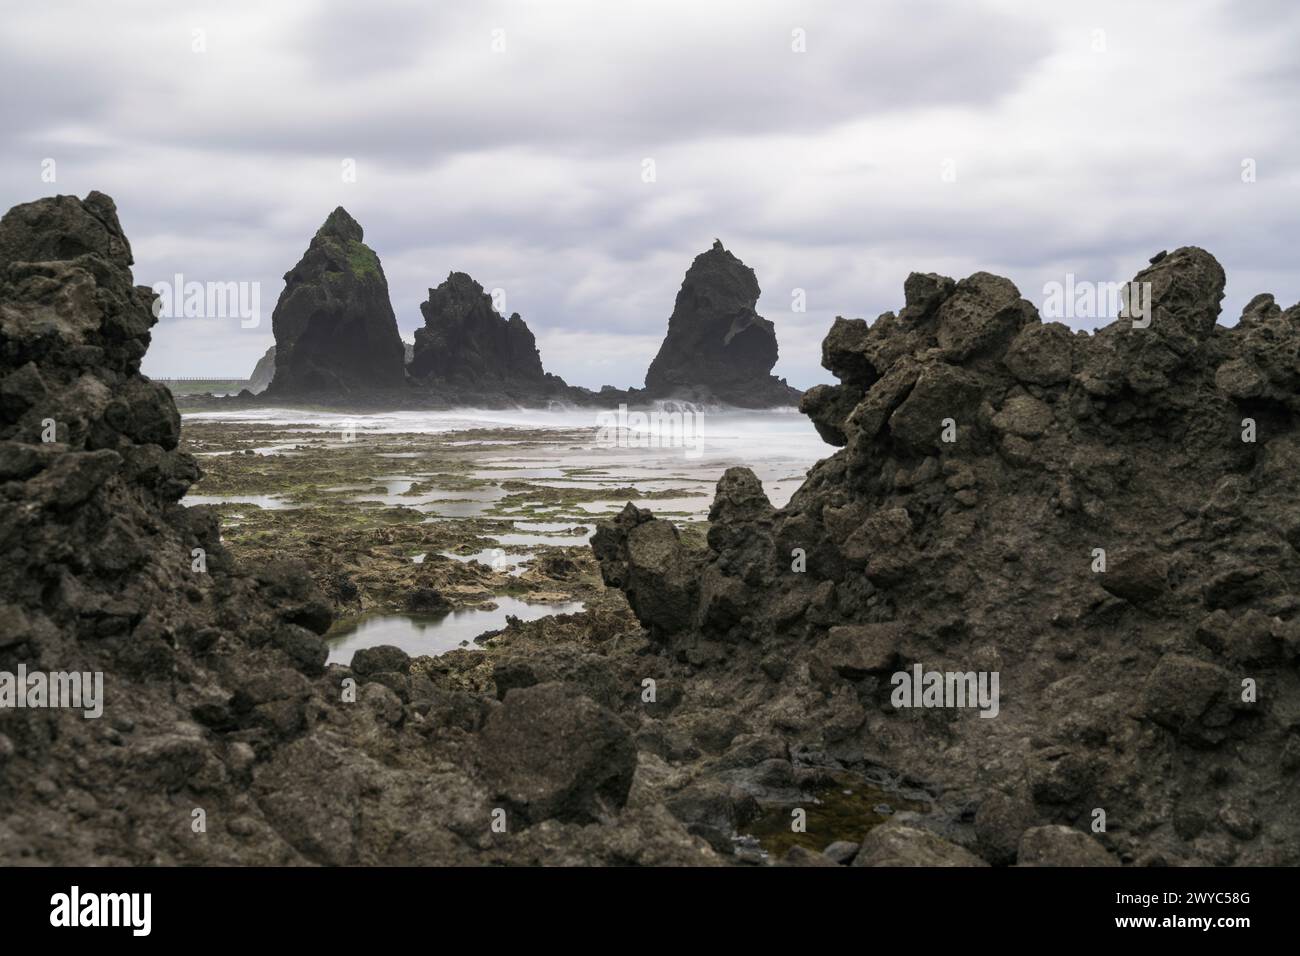 Nuvole minacciose si innalzano su una costa rocciosa con impressionanti formazioni rocciose che sporgono dal mare Foto Stock